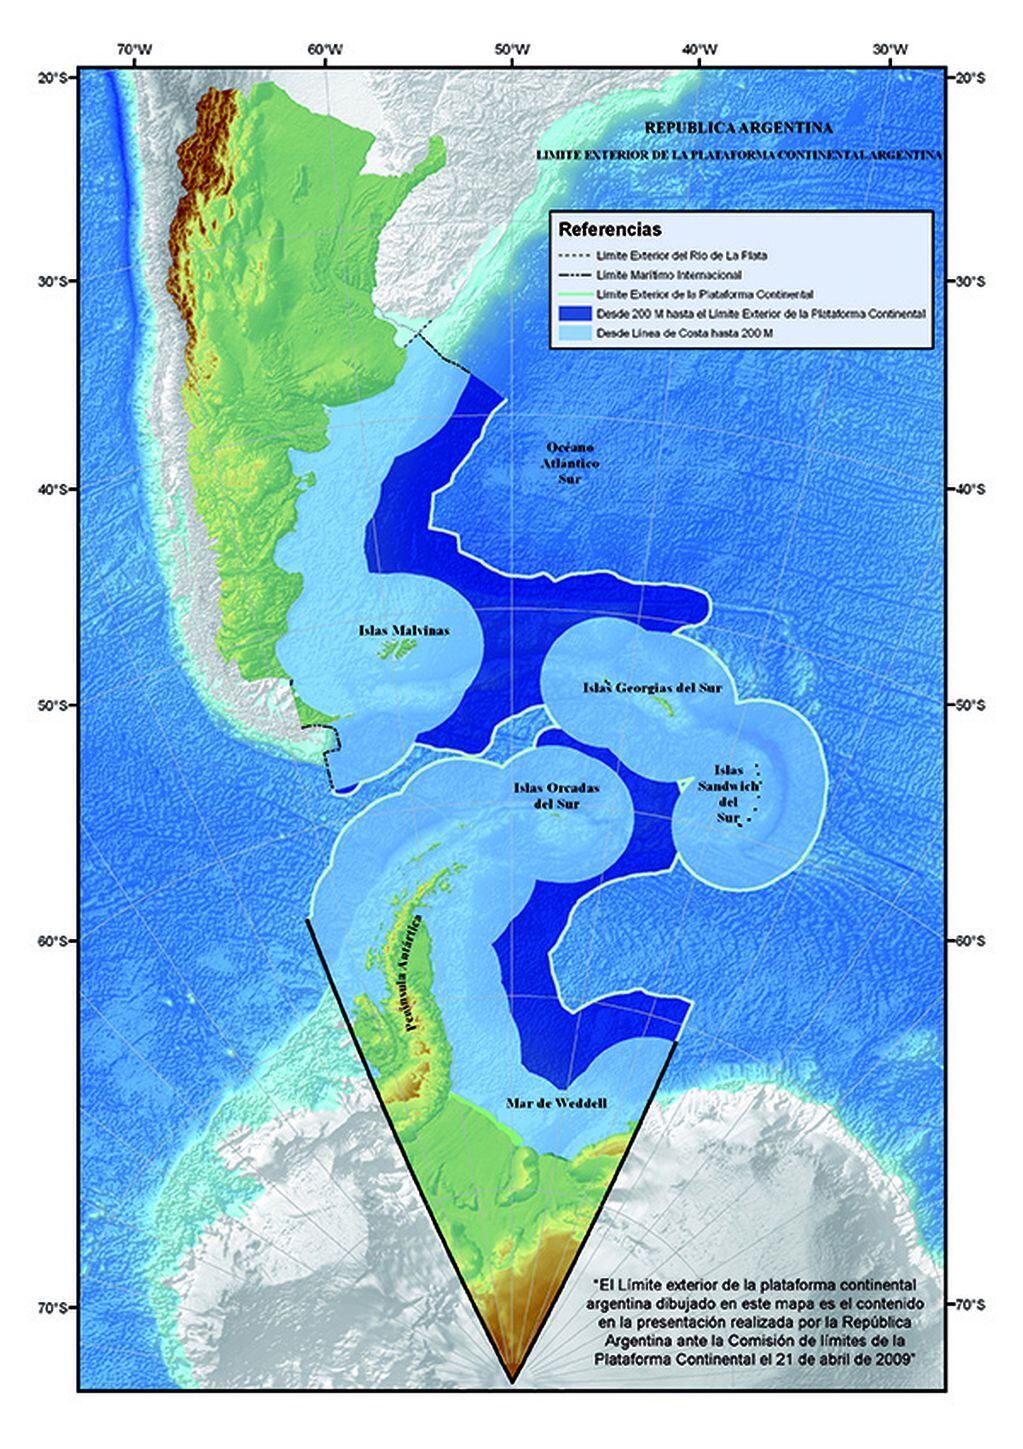 Mapa oficial bicontinental y de la plataforma continental argentina. Resultado del trabajo realizado por nuestro país, luego de casi una década.